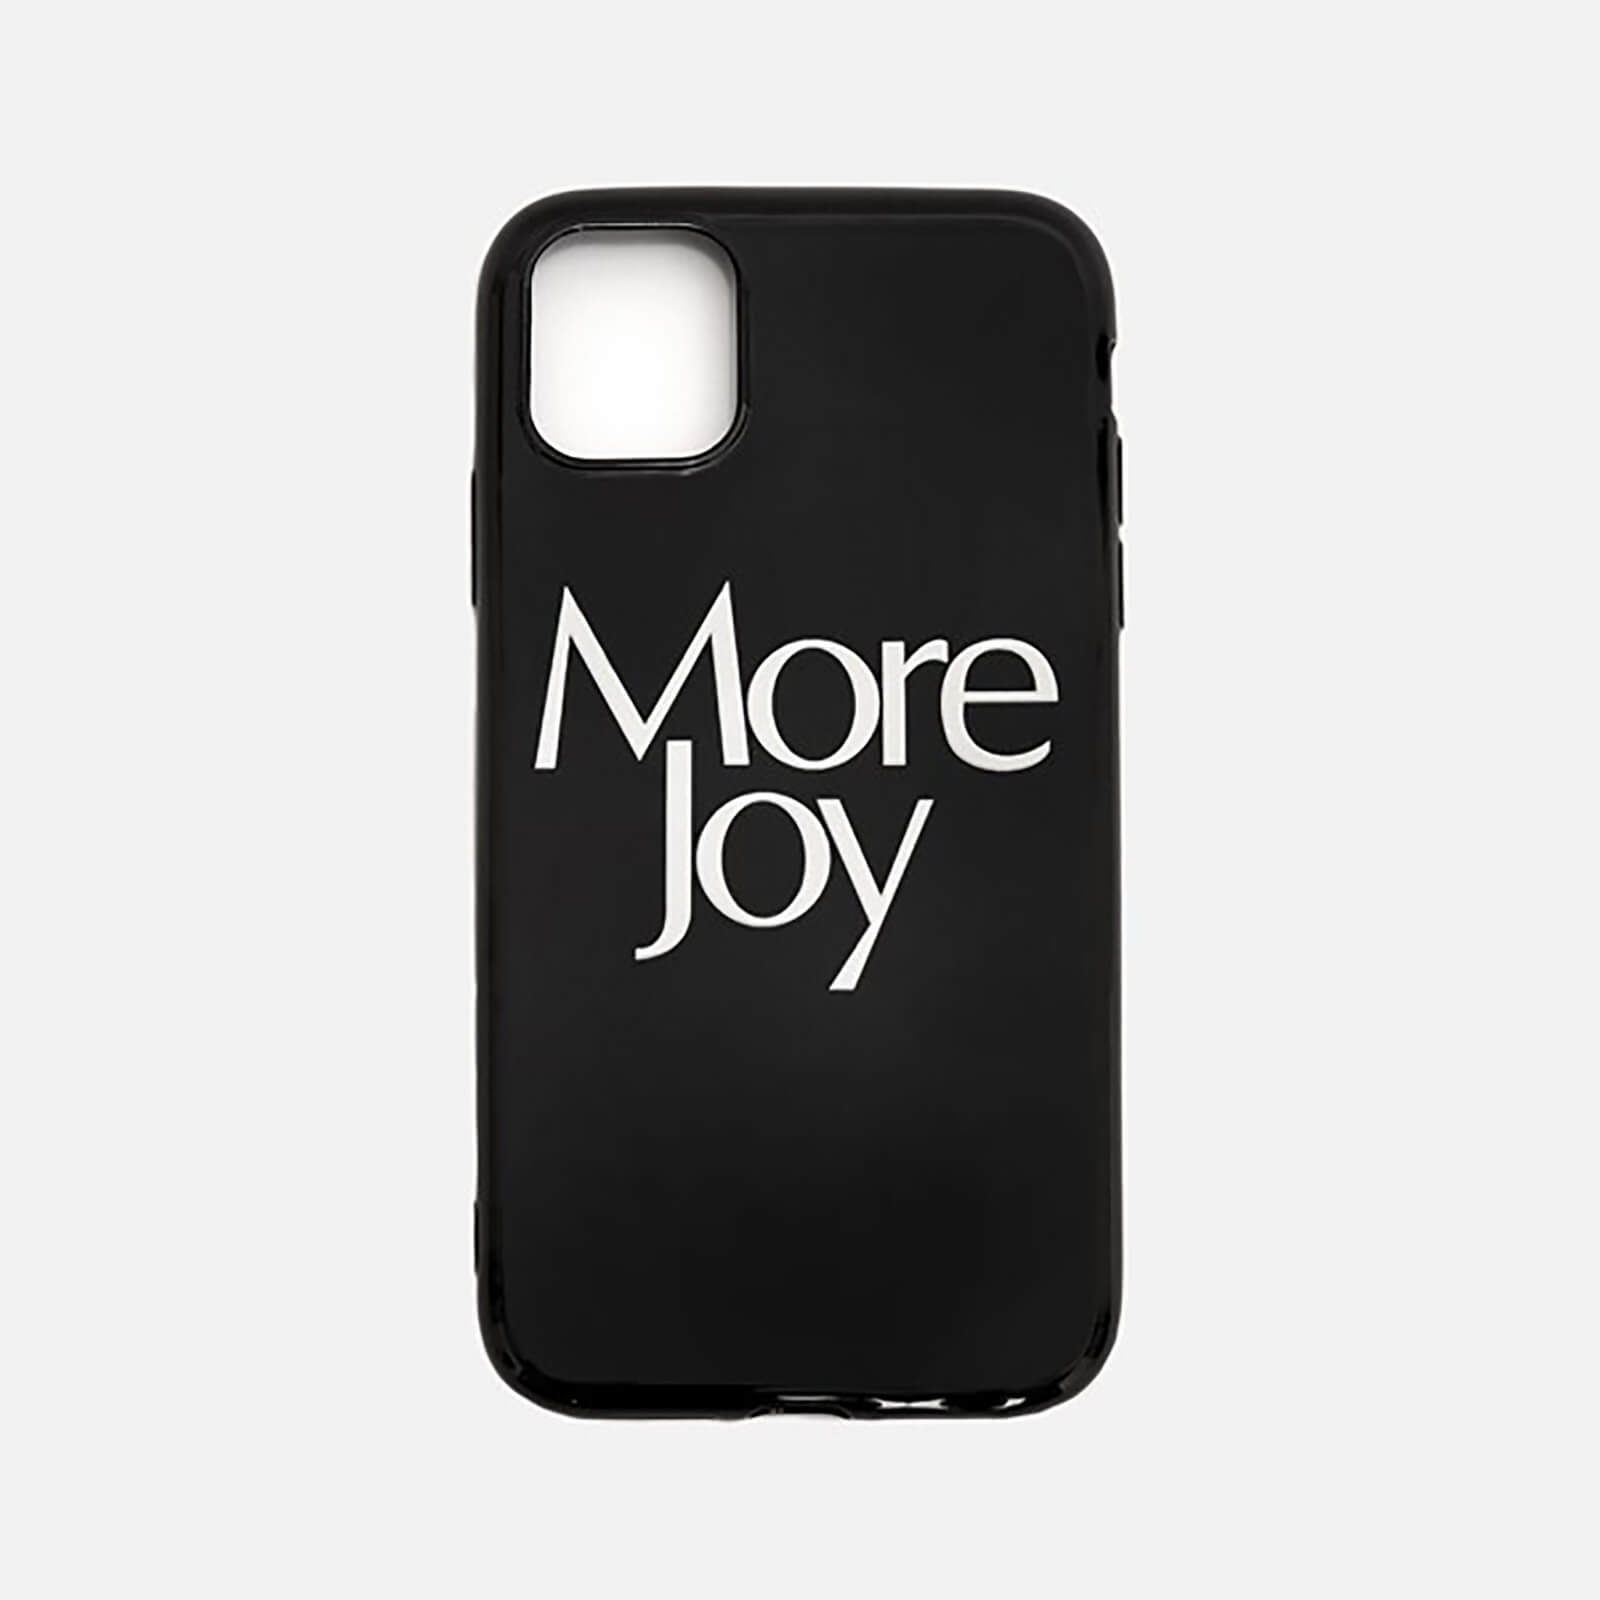 More Joy iPhone 12 Max Case